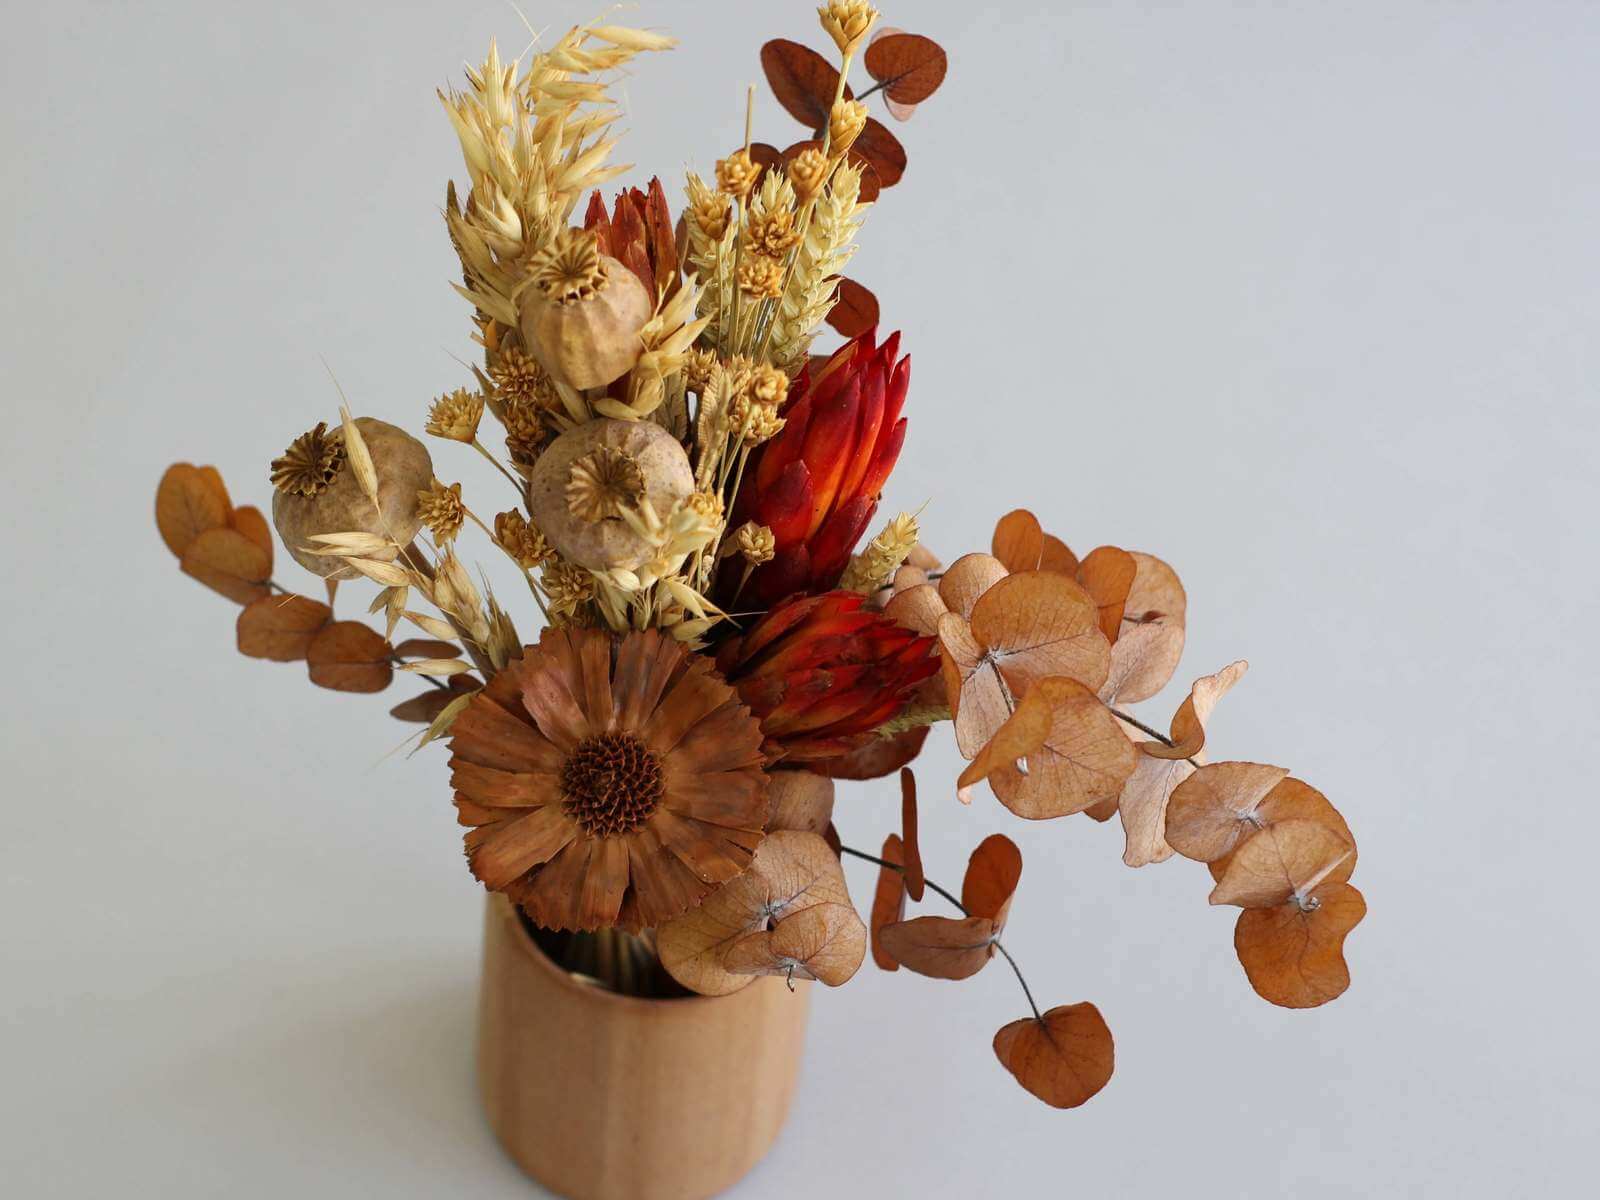 Buchet cu flori și plante naturale, conservate